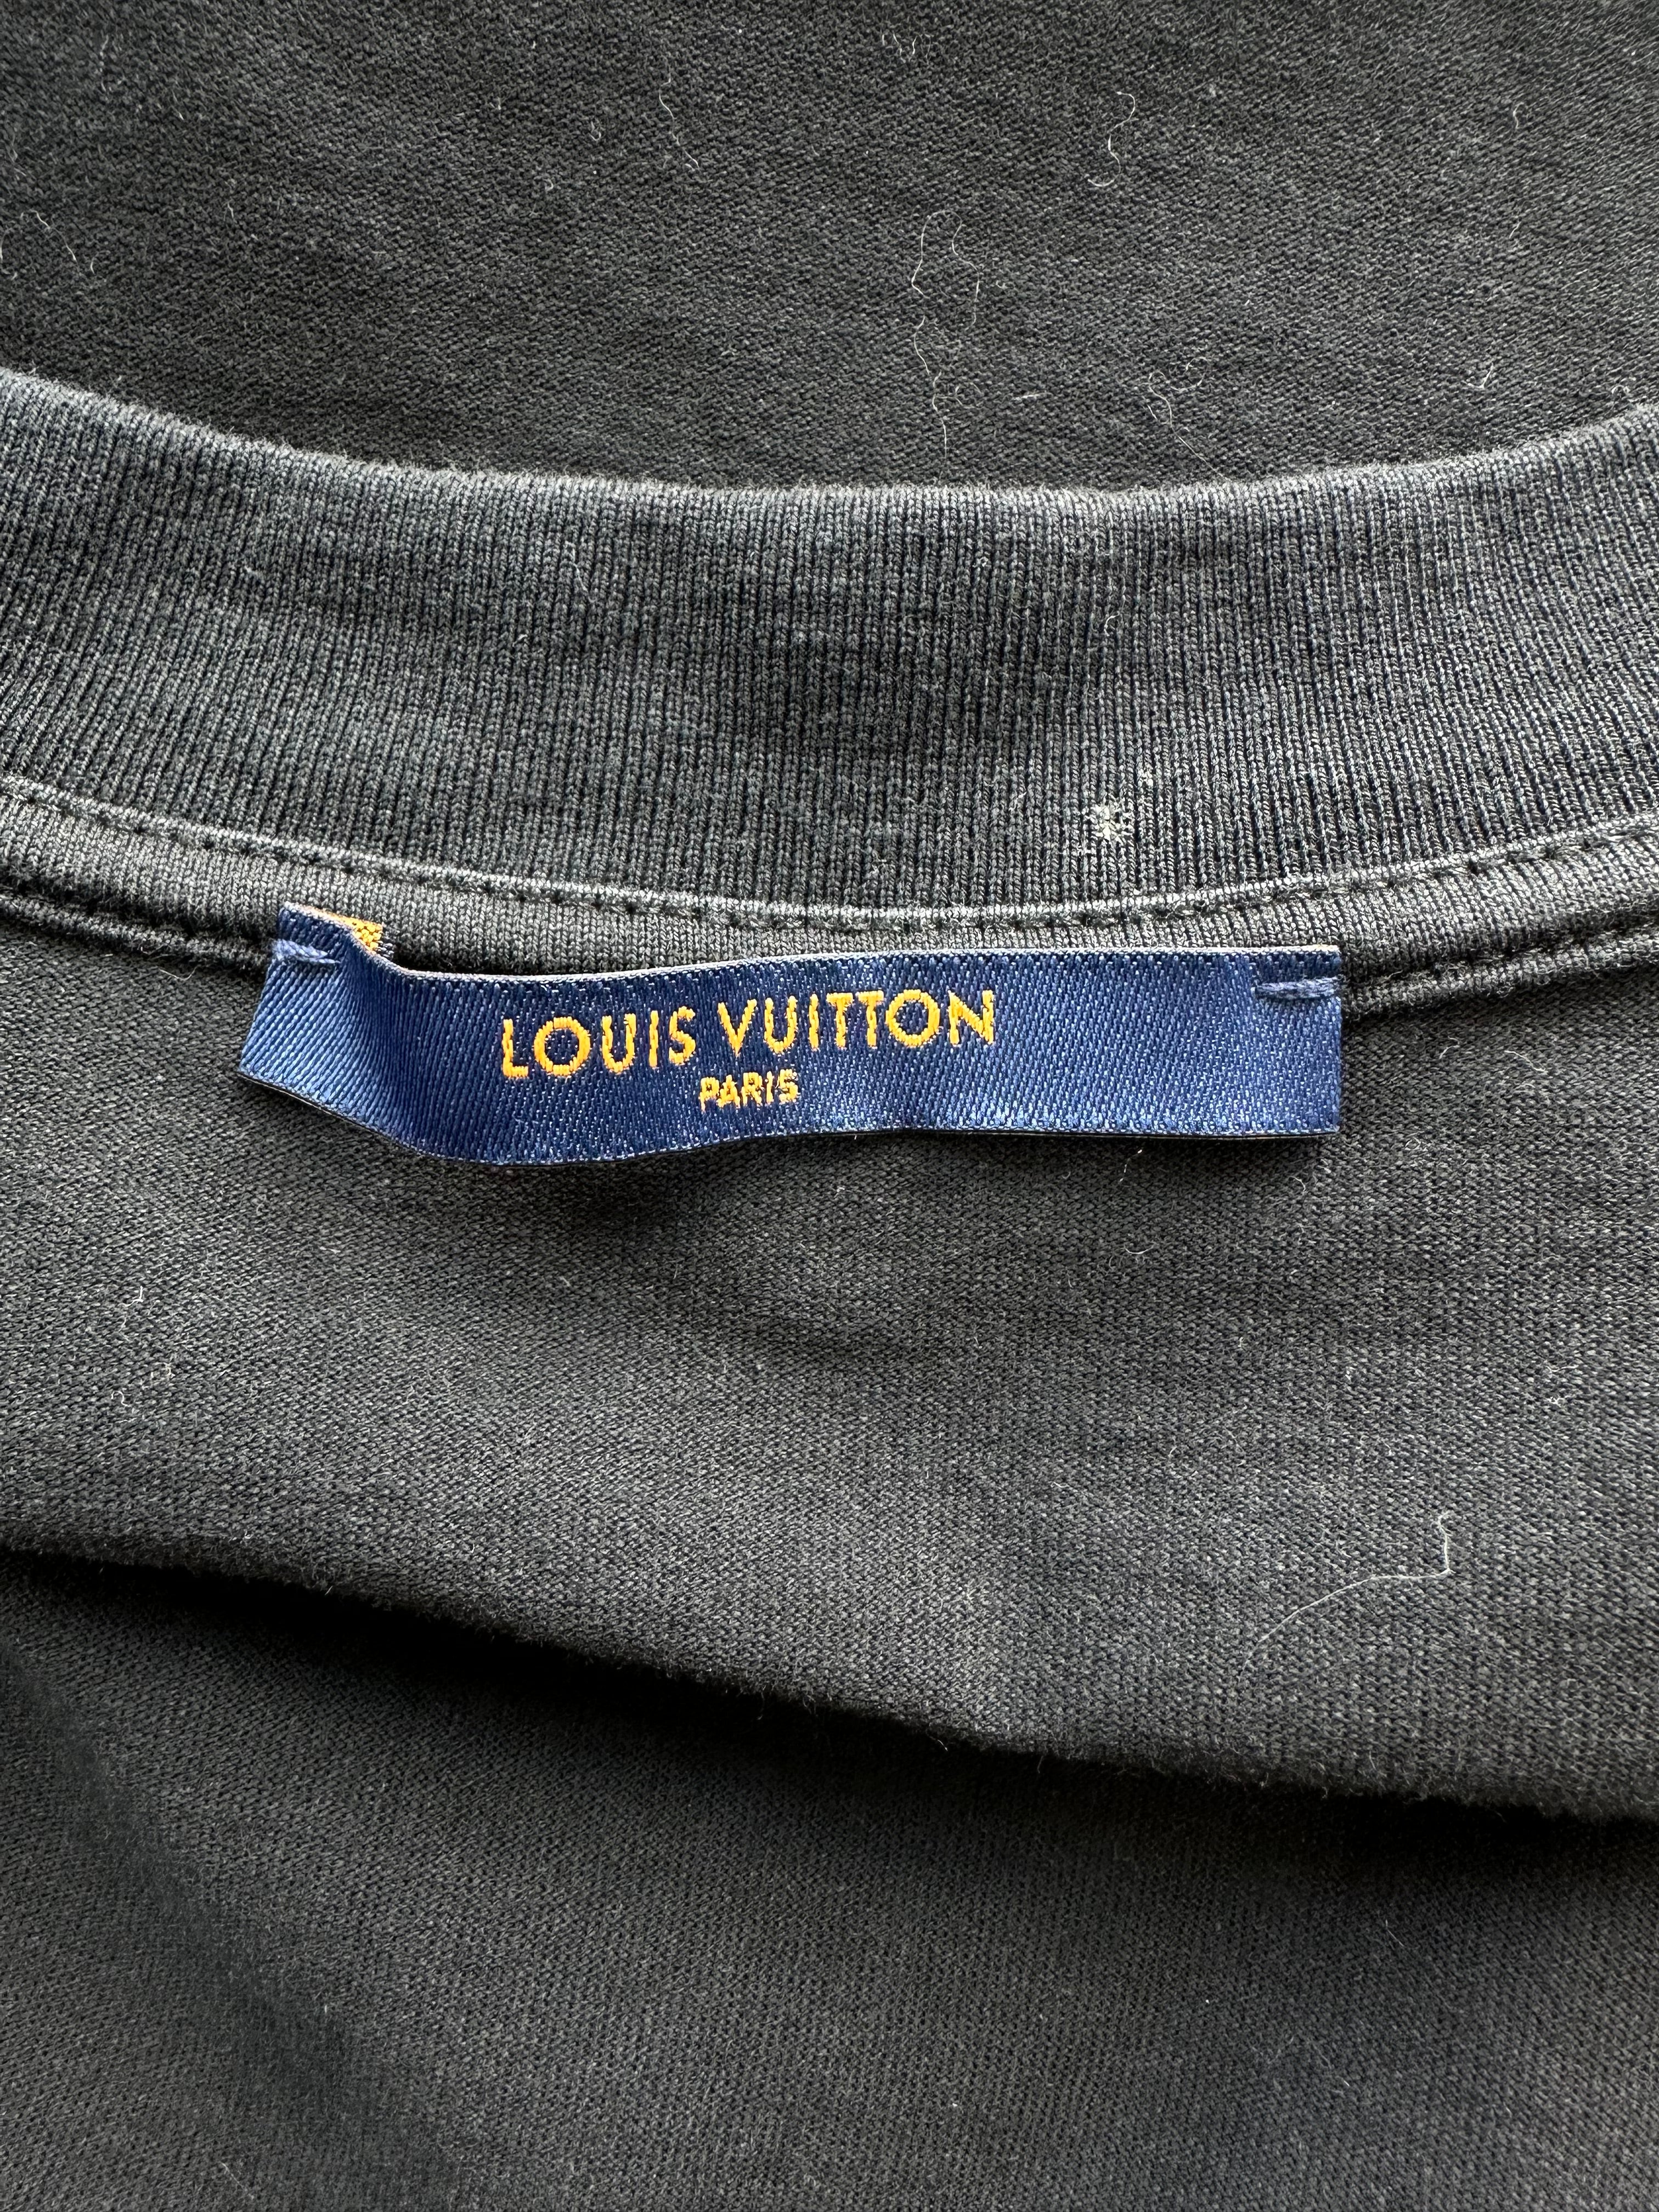 Louis Vuitton Tshirt  Size One size  Catawiki